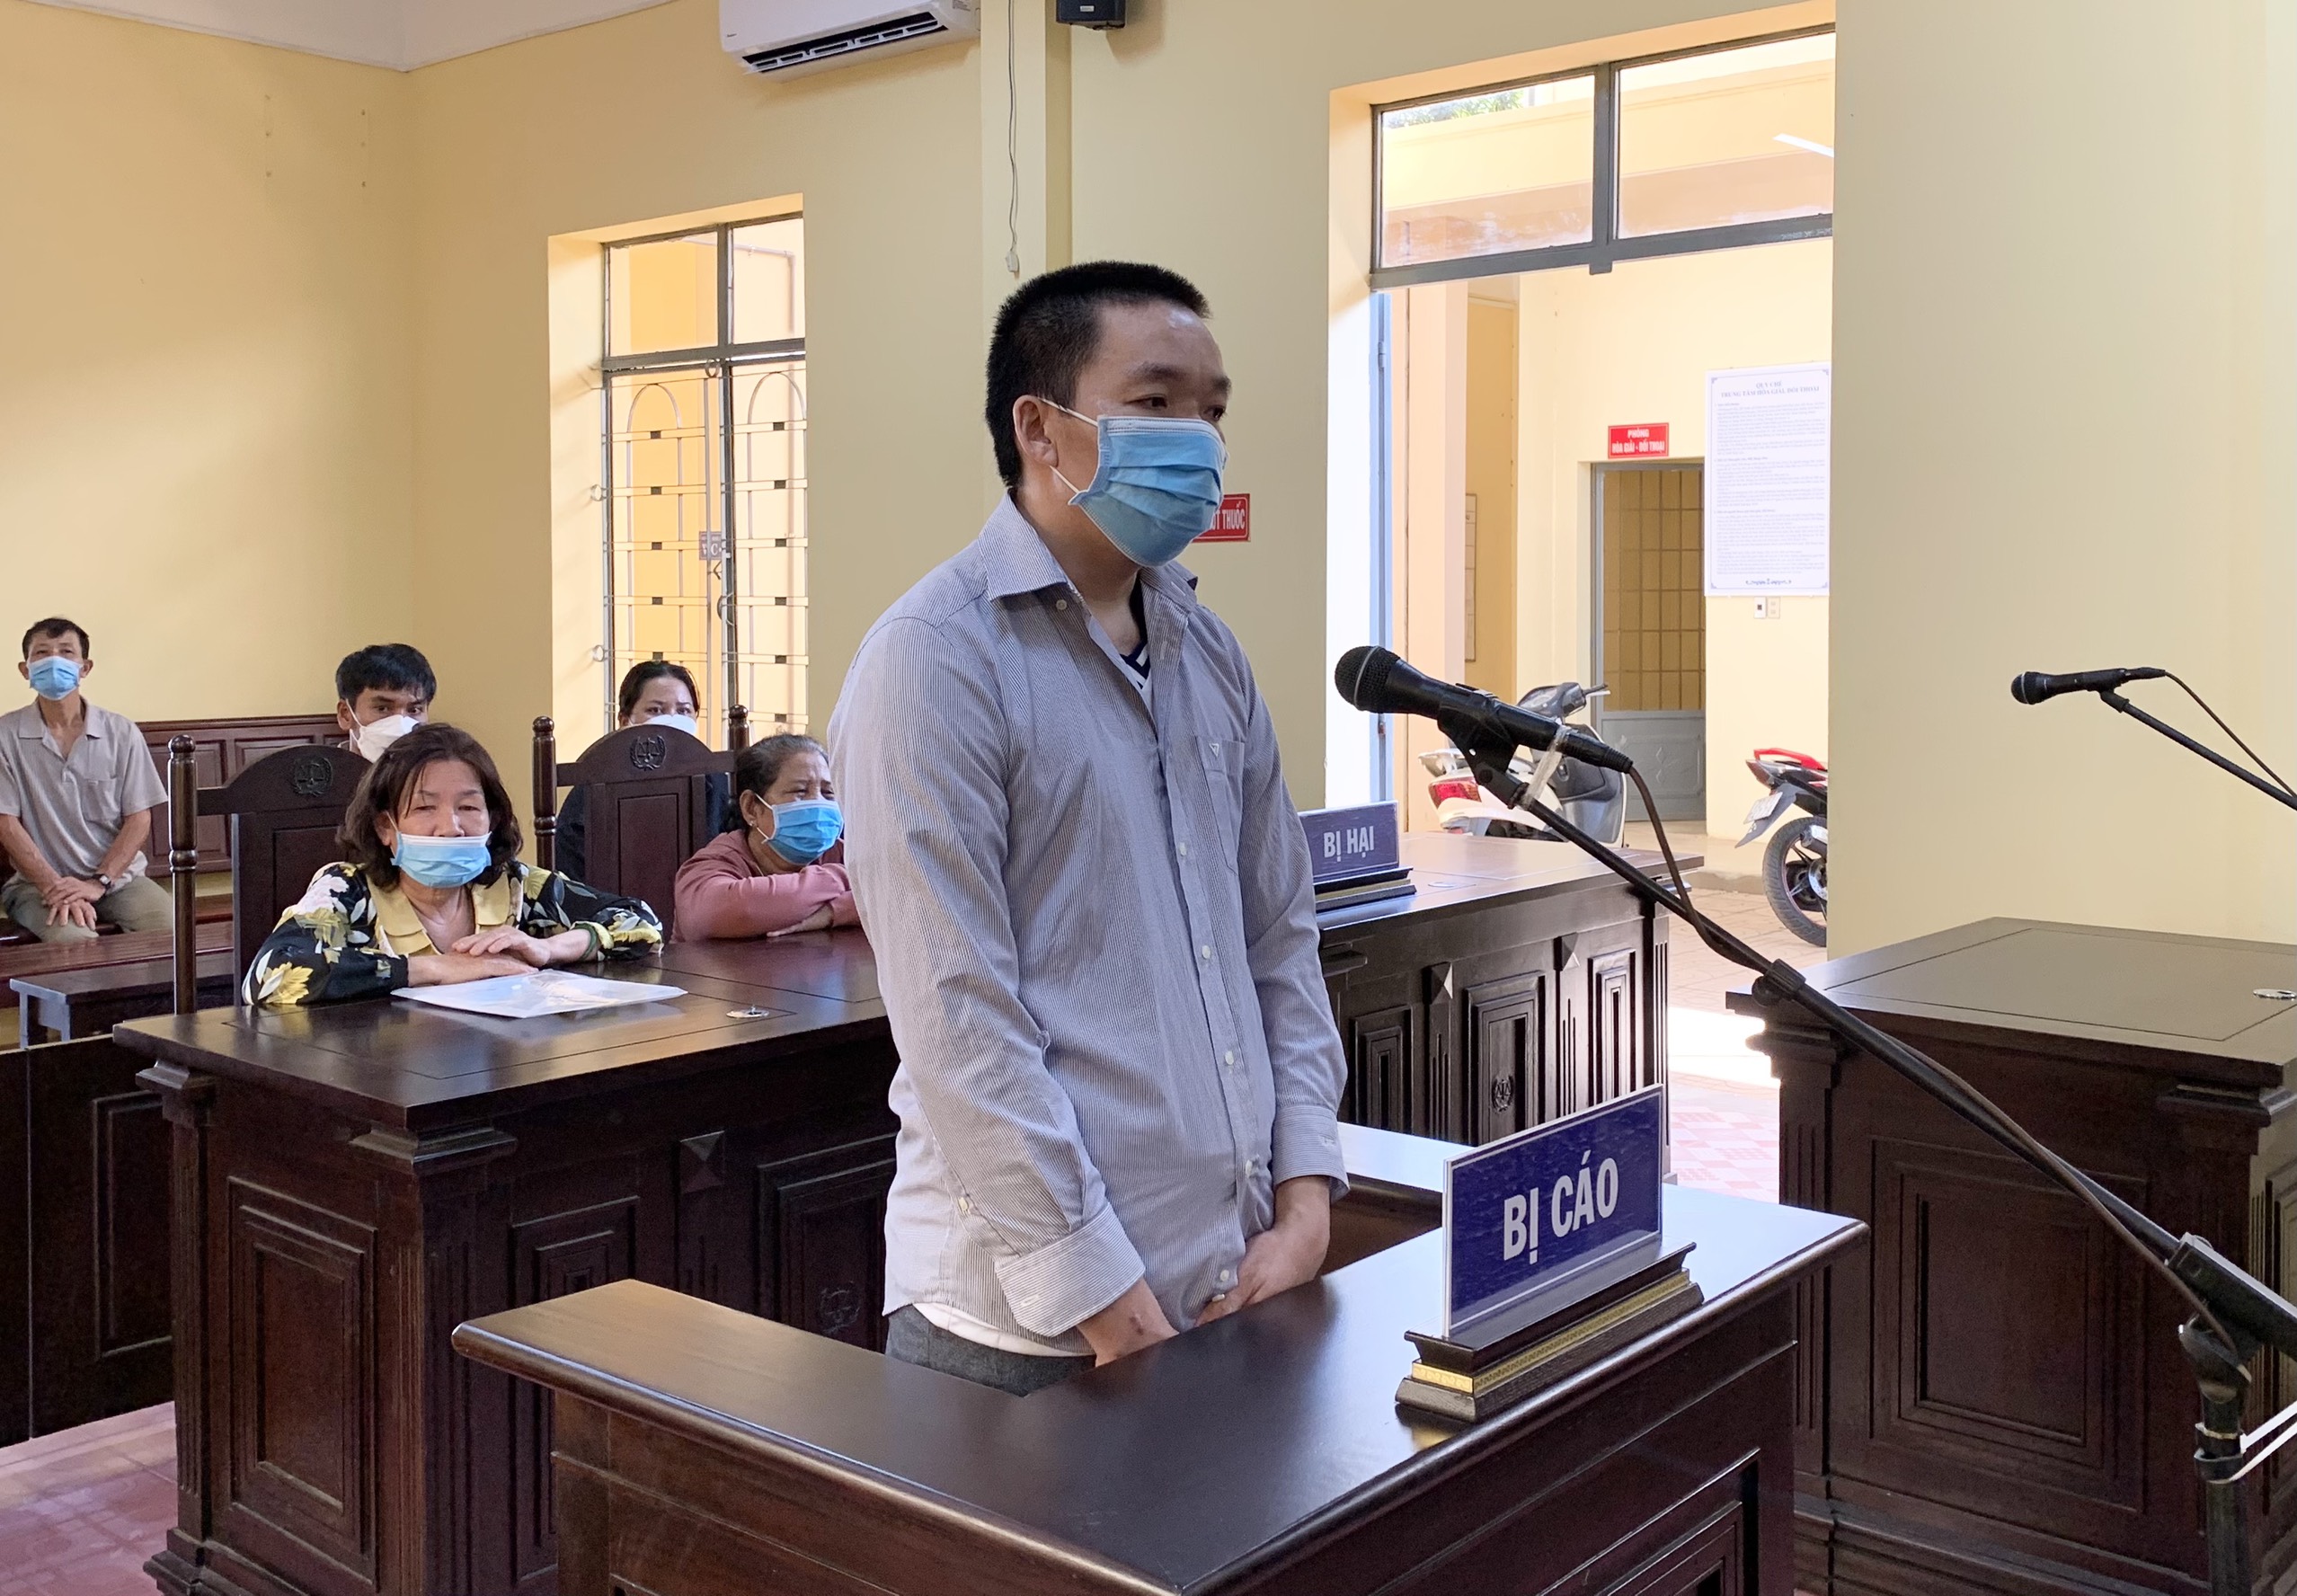 Nông Văn Phong (33 tuổi, KHTT: Xã Đắk Ha, huyện Đắk Glong, tỉnh Đắk Nông) phải chịu 10 năm tù về tội “Cố ý gây thương tích” dẫn đến chết người.